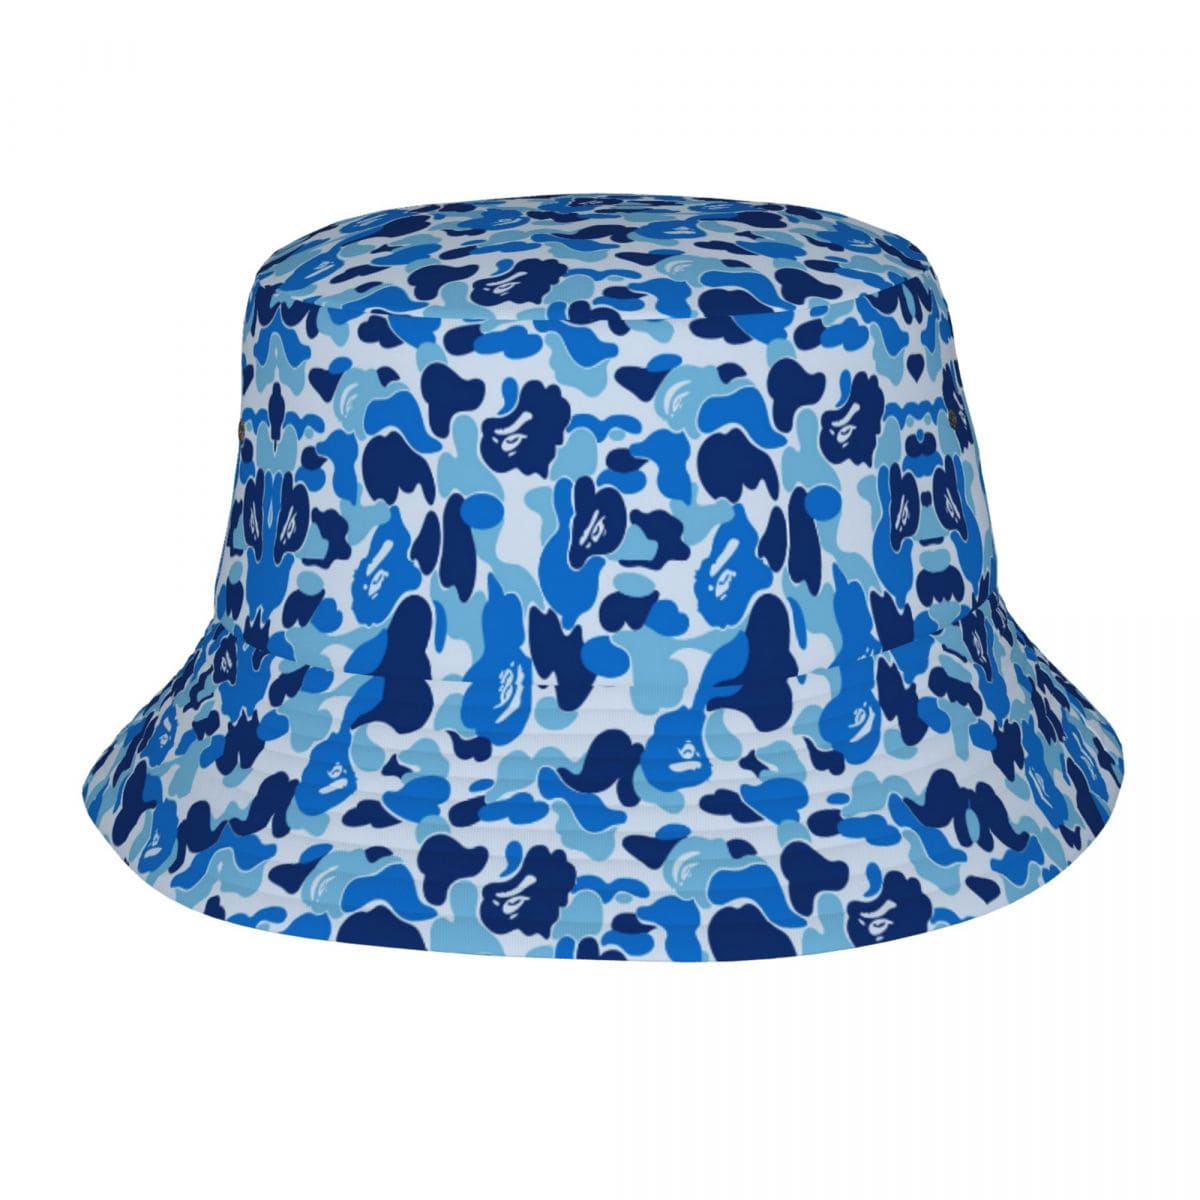 GLTR Camouflage Bucket Hat